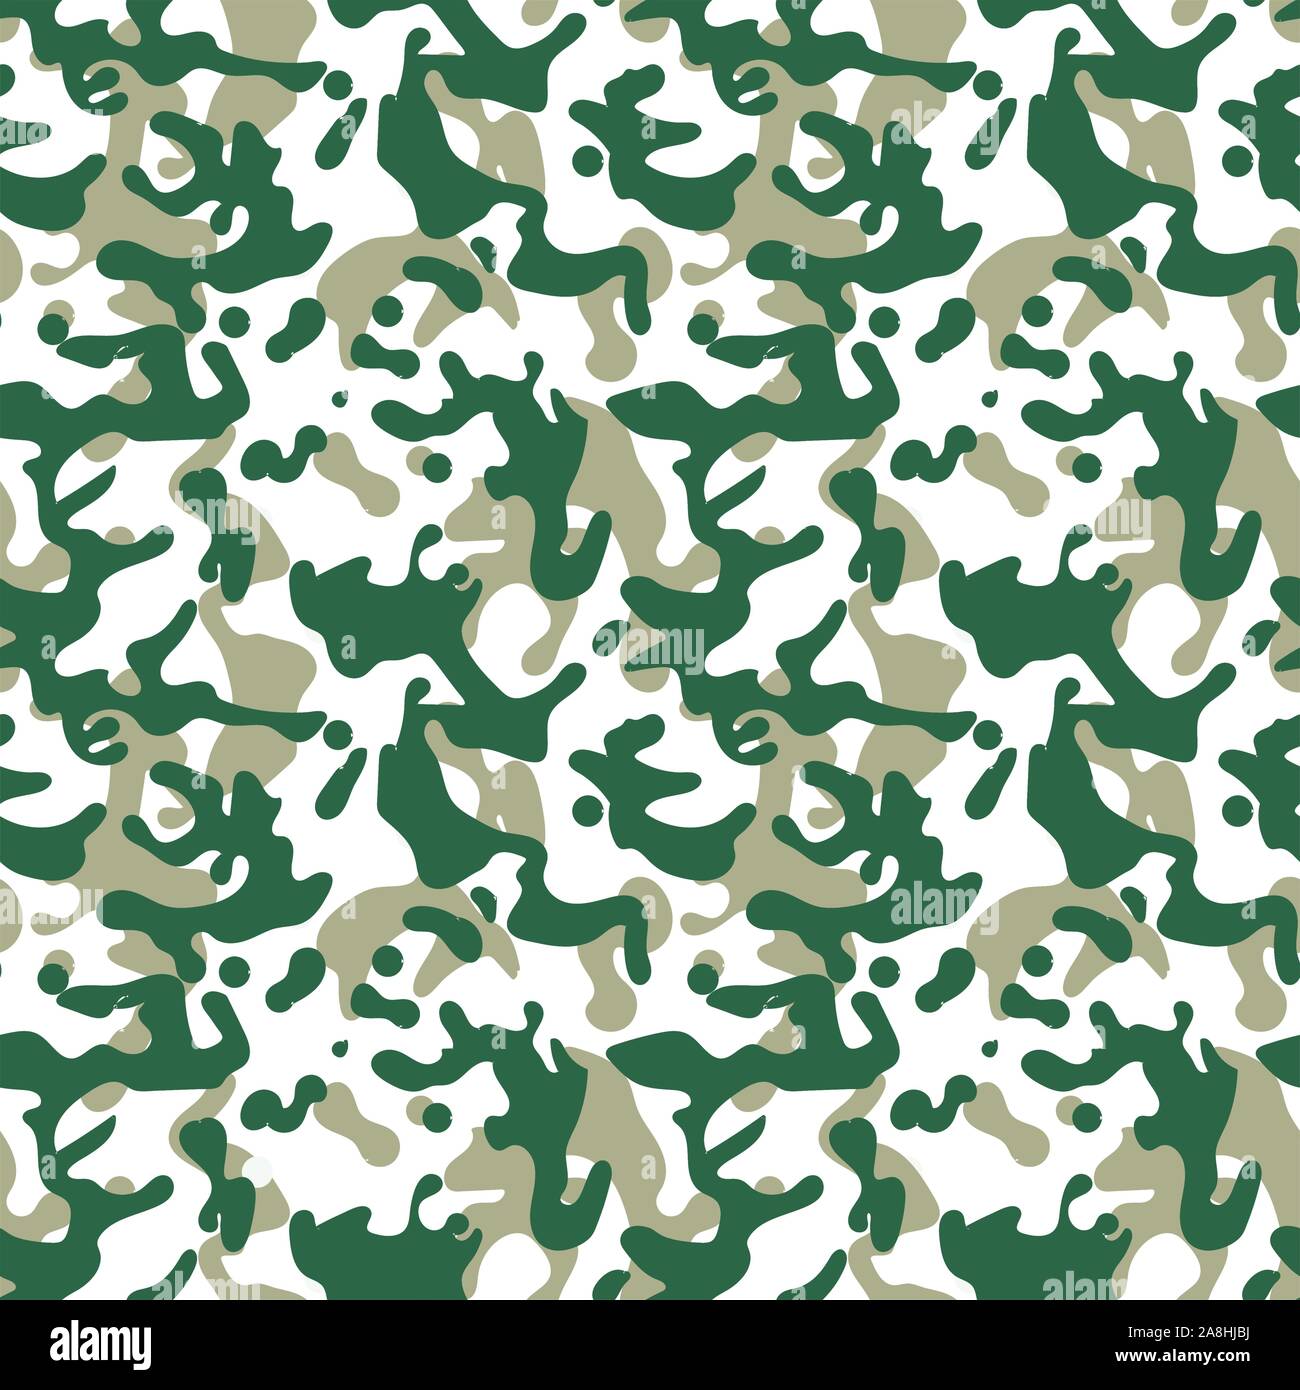 Il camuffamento seamless pattern, esercito background in sfumature di verde,astratta texture militare, tessuto stampa, solier design uniforme. - Vettore Illustrazione Vettoriale